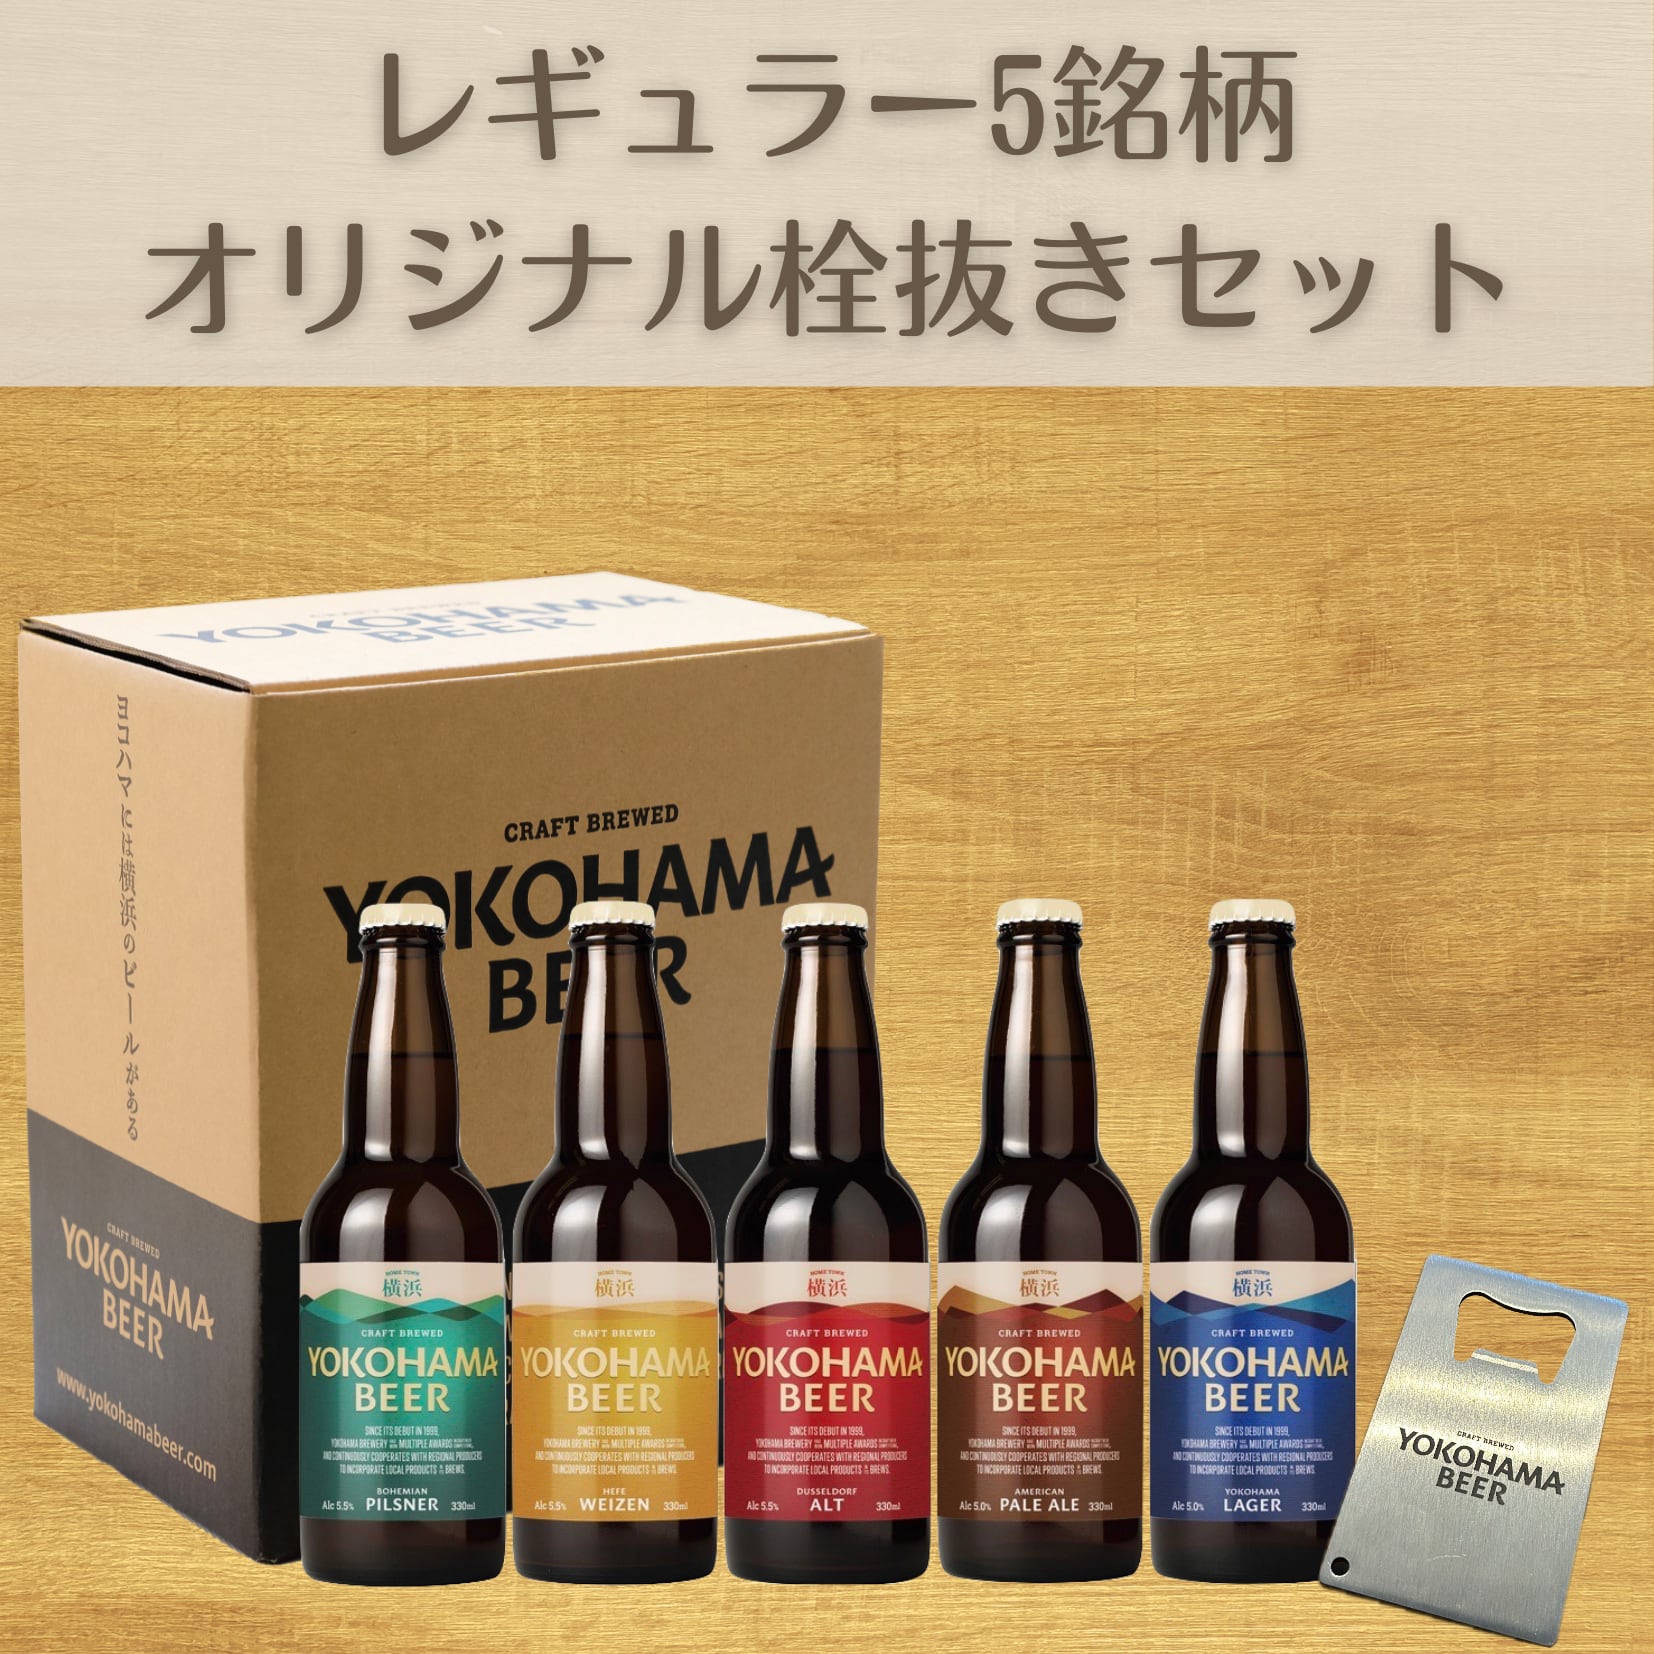 横浜ビール定番スタイル 5銘柄とオリジナル栓抜きセット